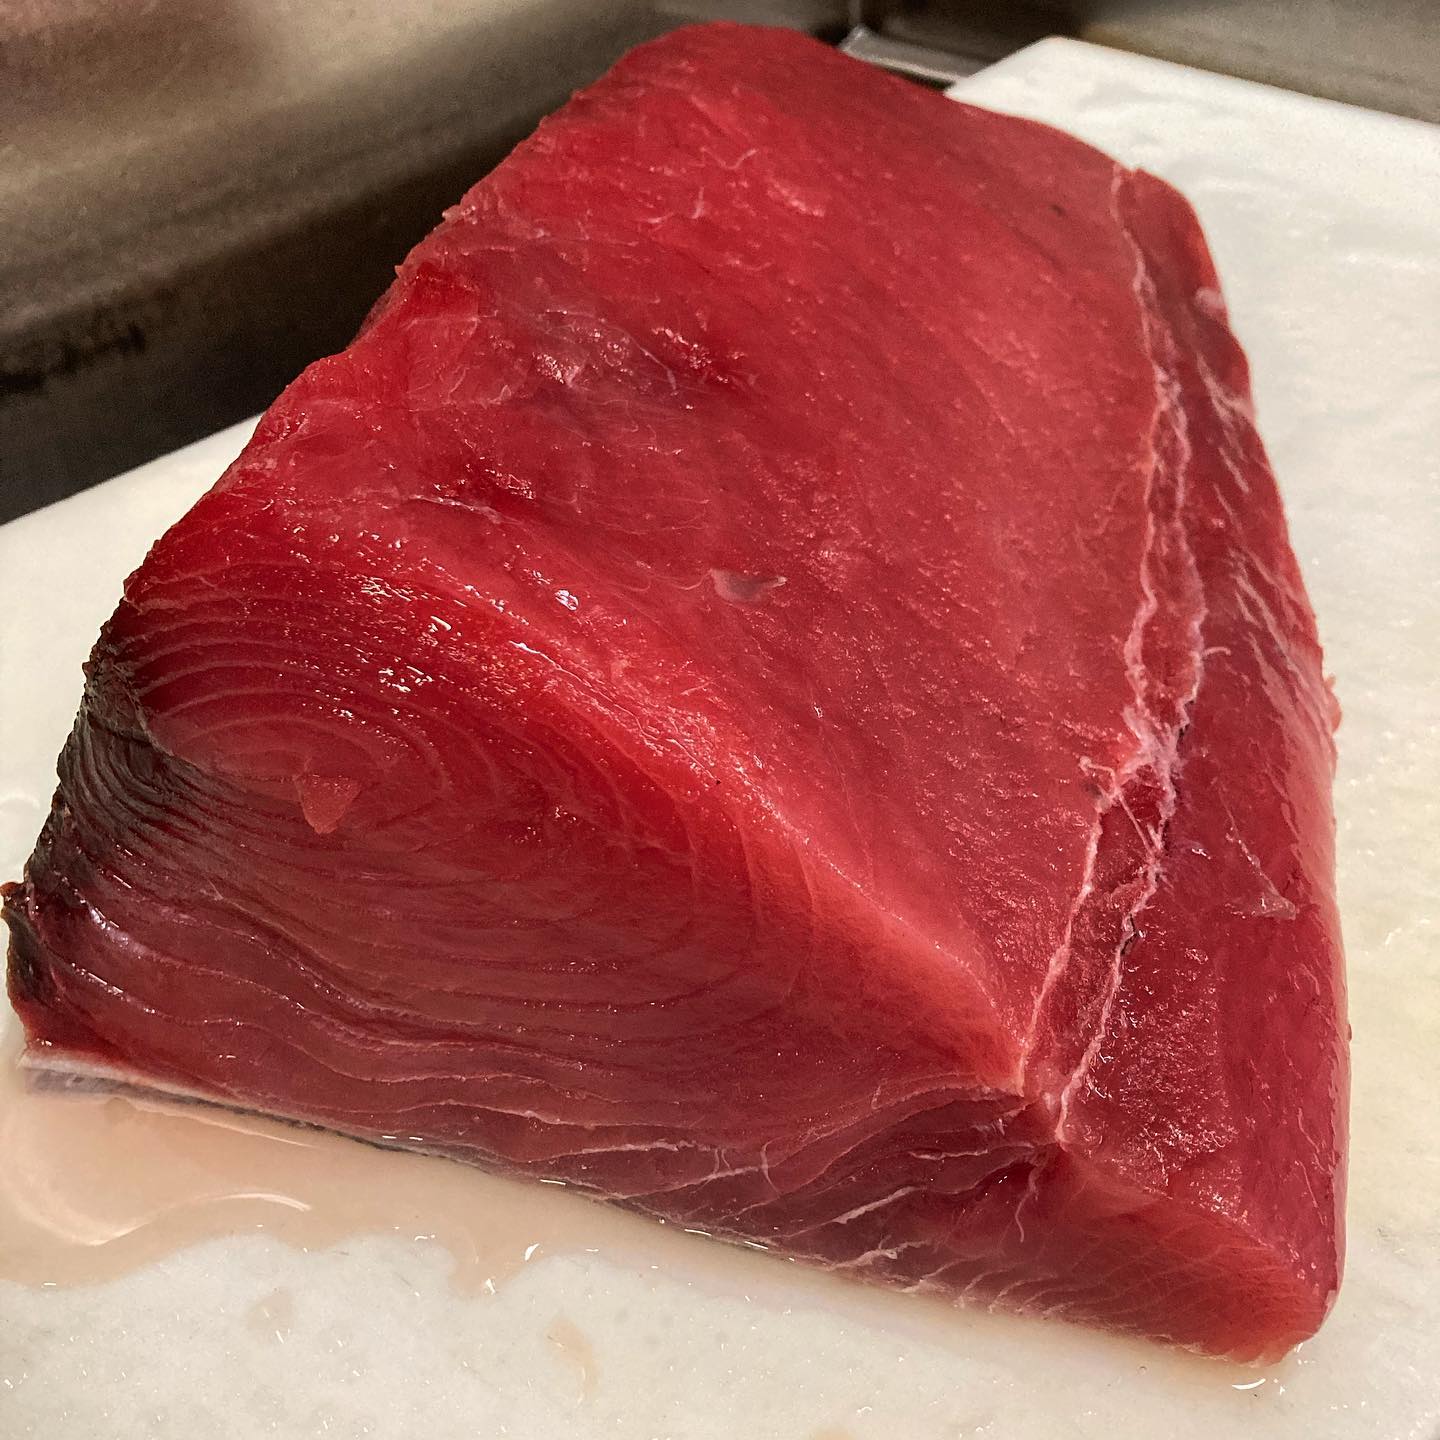 Beautiful Yellowfin Tuna today!